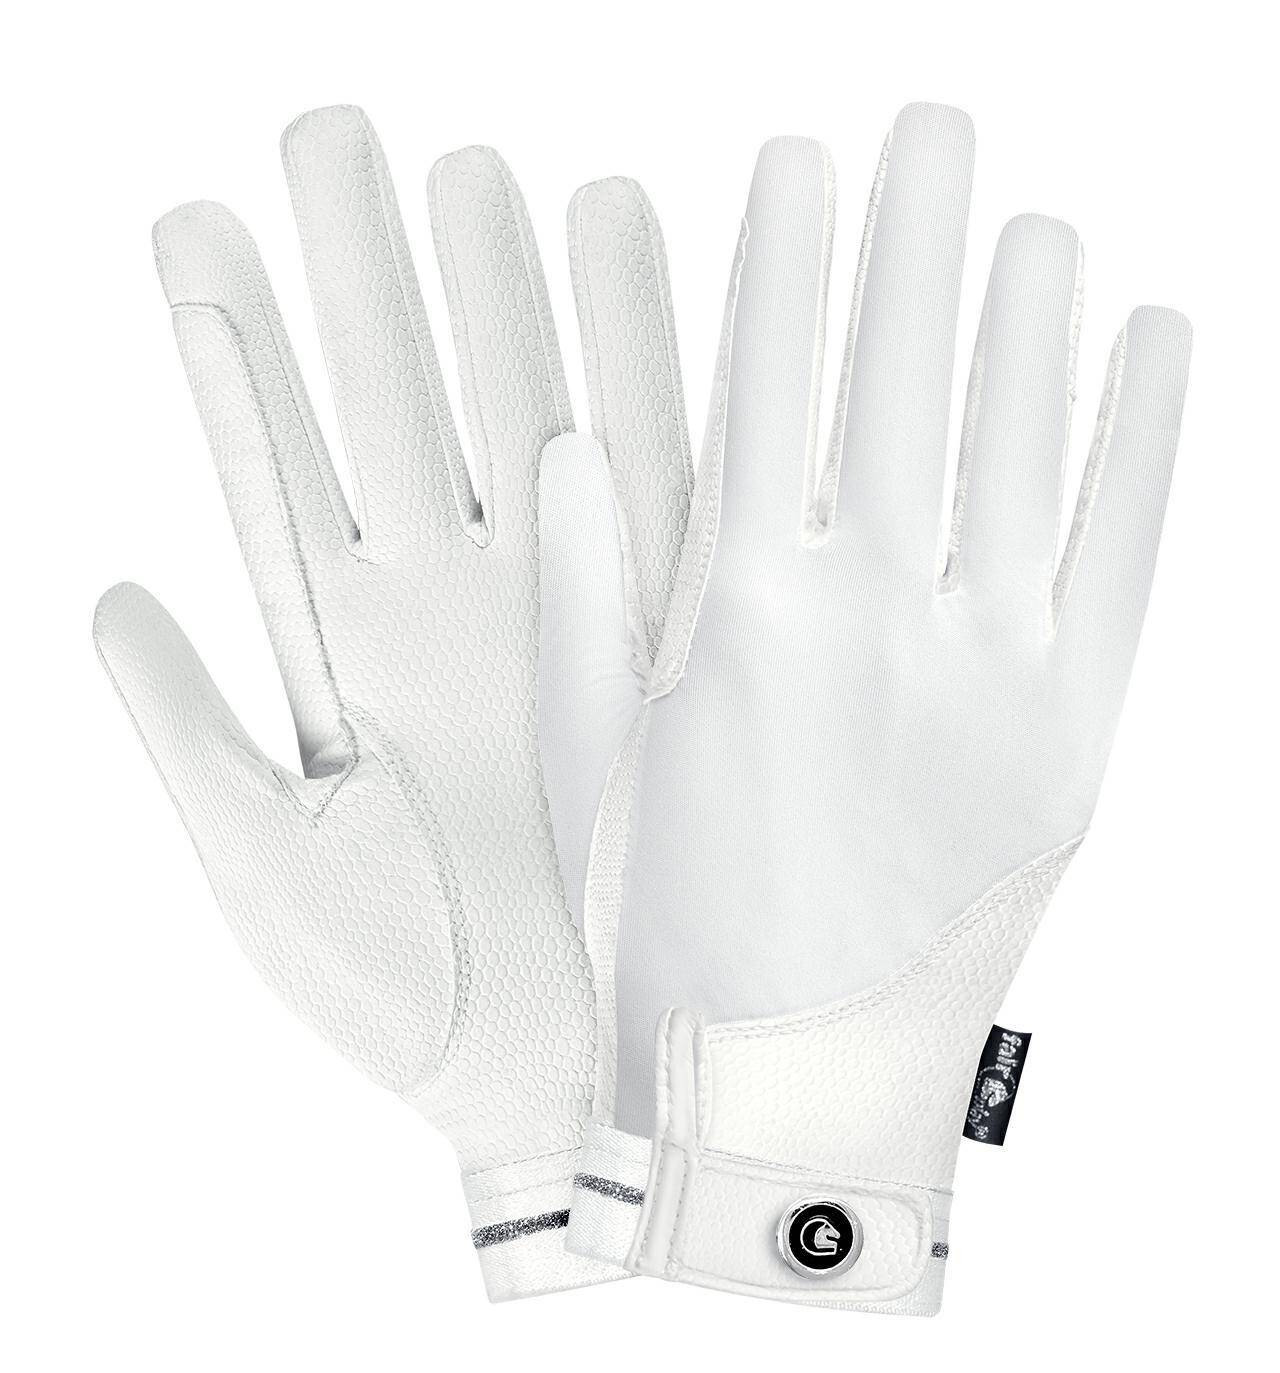 Rękawiczki FP REVEL biały  XS